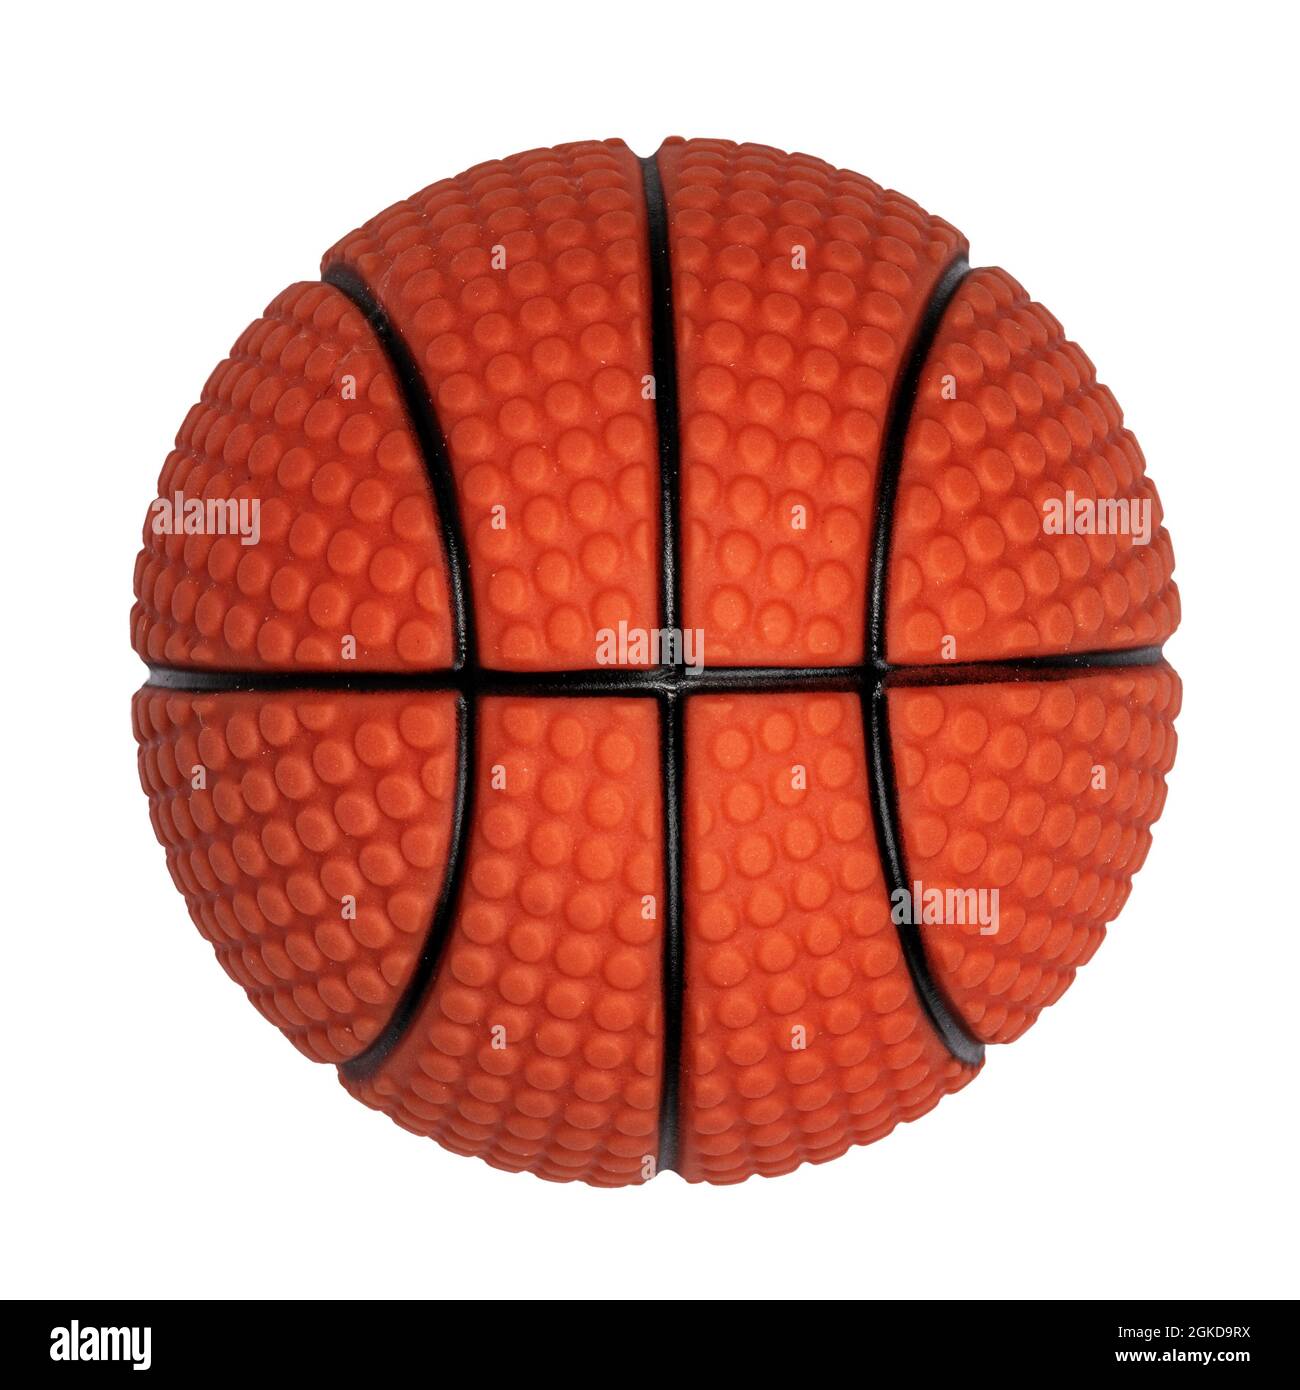 Vue de dessus du ballon de basket-ball noir et orange. Isolé sur un fond blanc. Banque D'Images